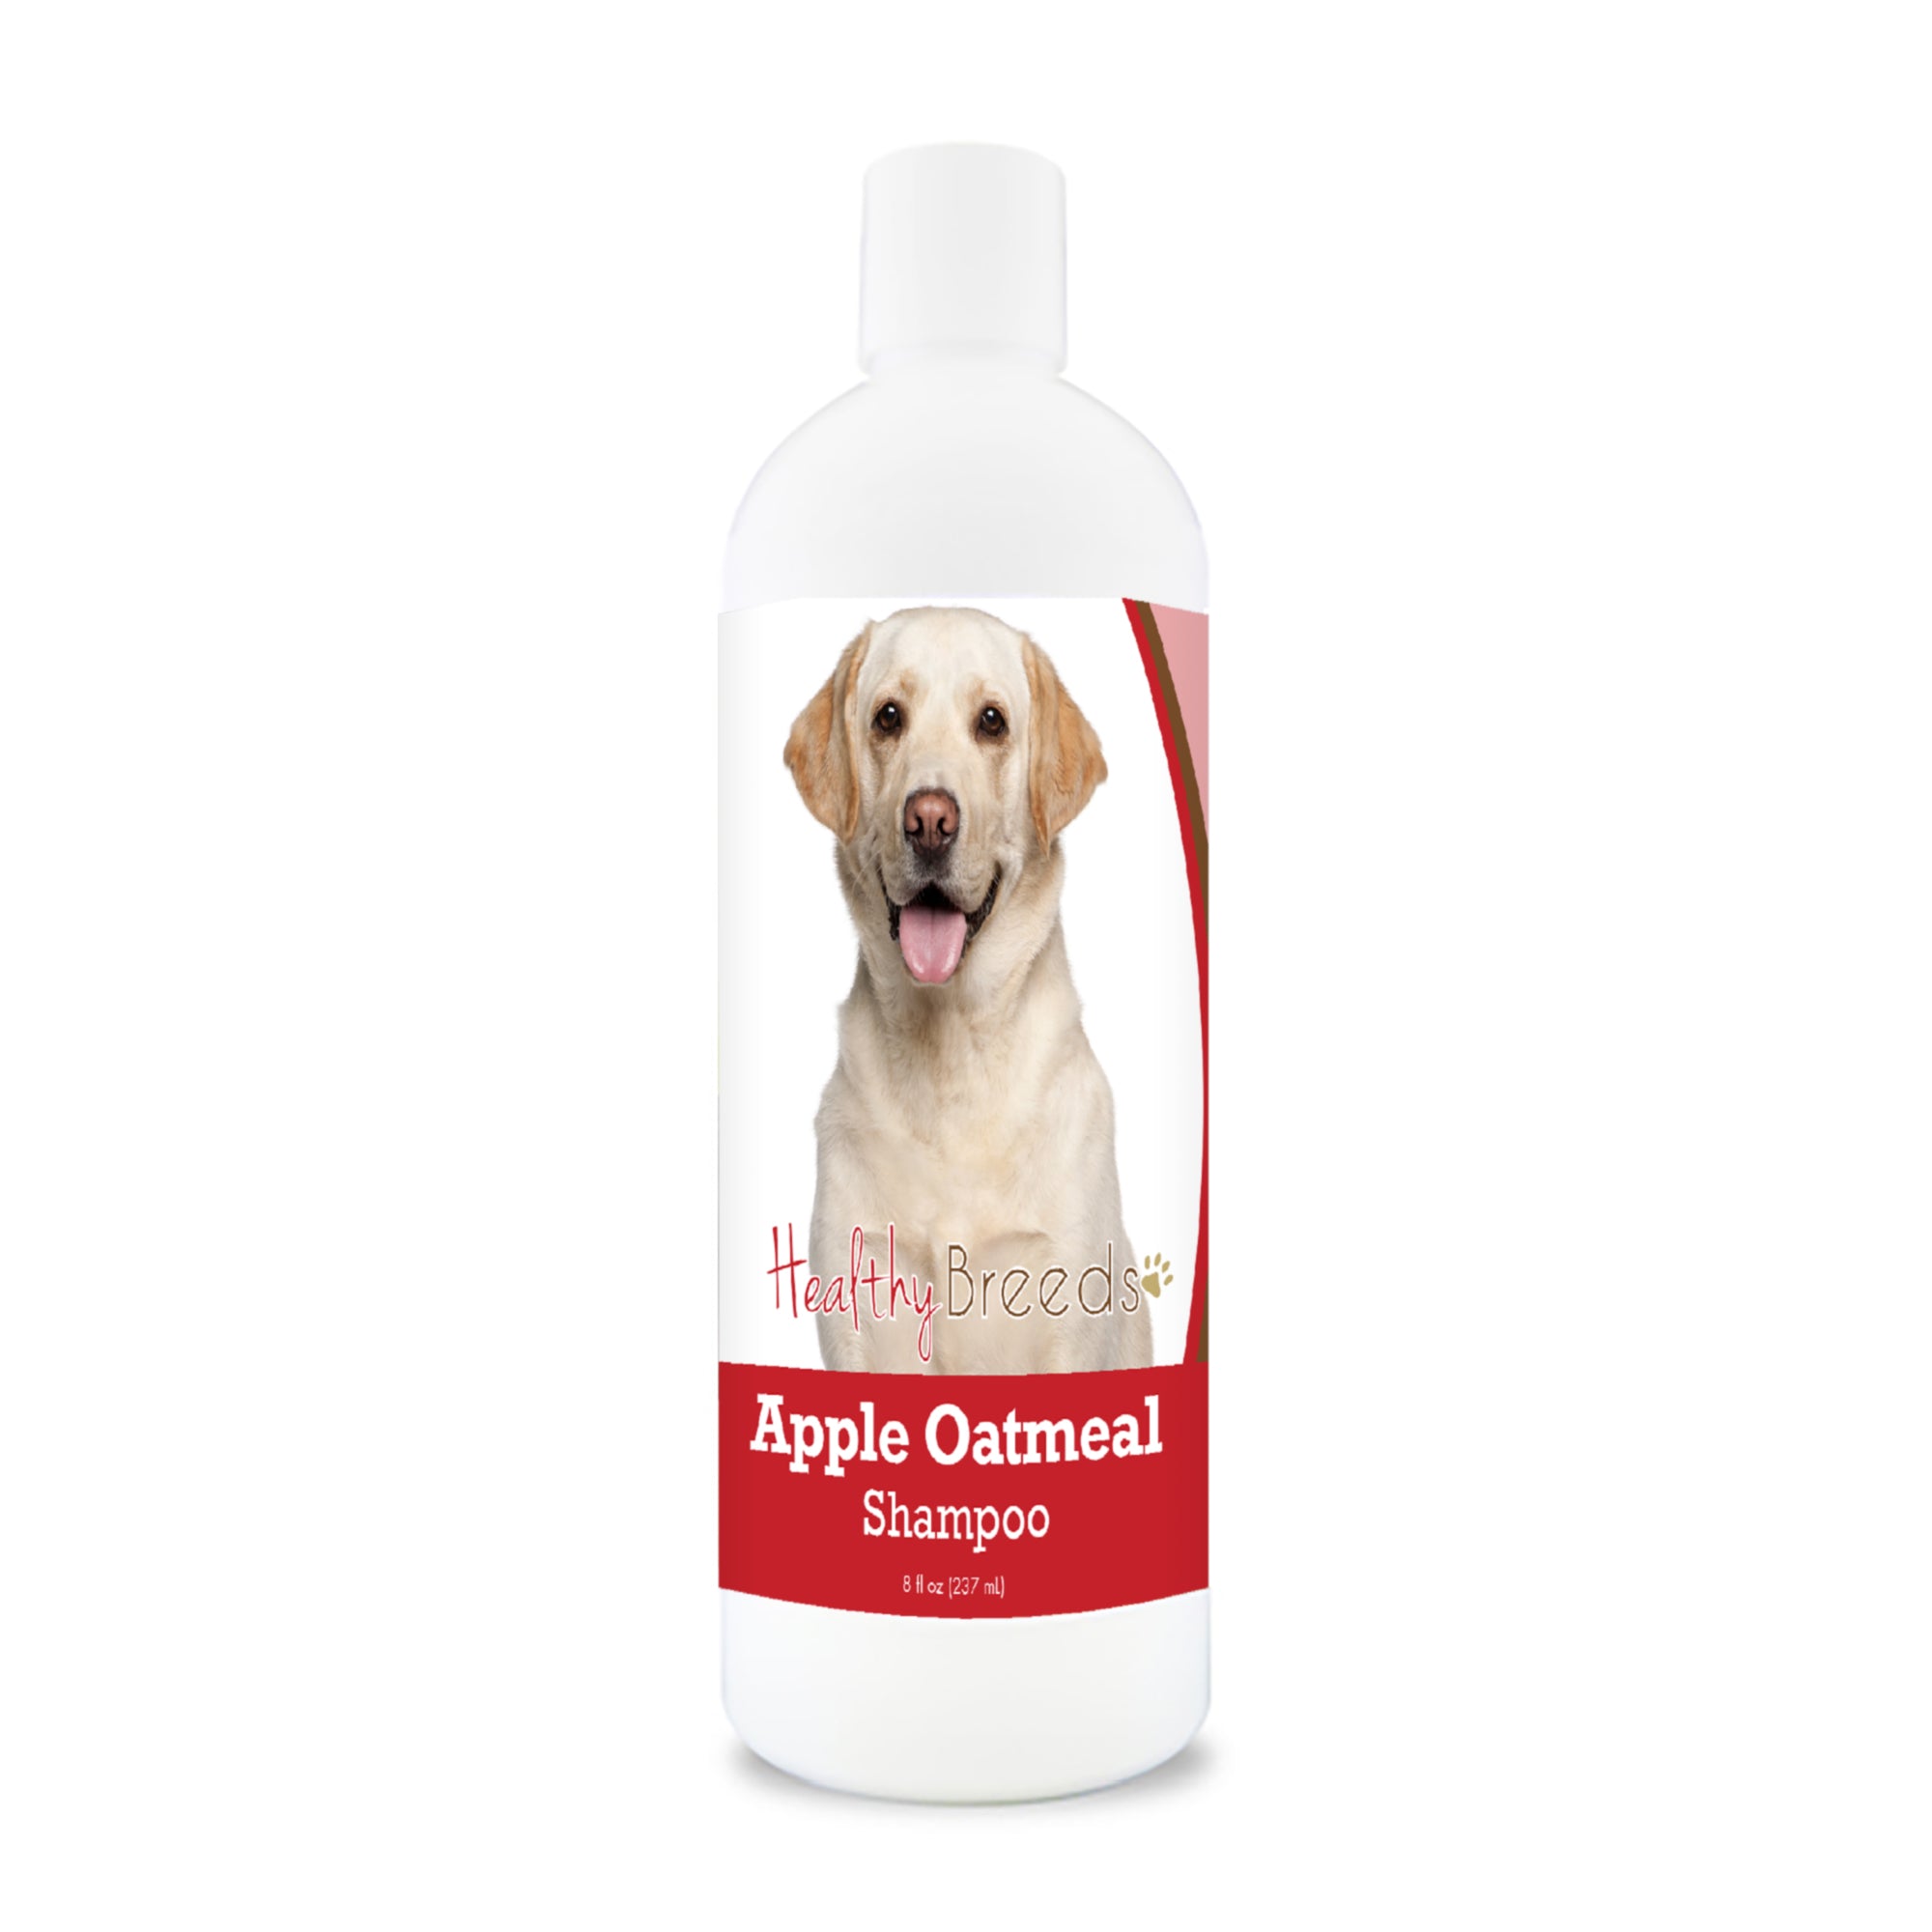 Labrador Retriever Apple Oatmeal Shampoo 8 oz